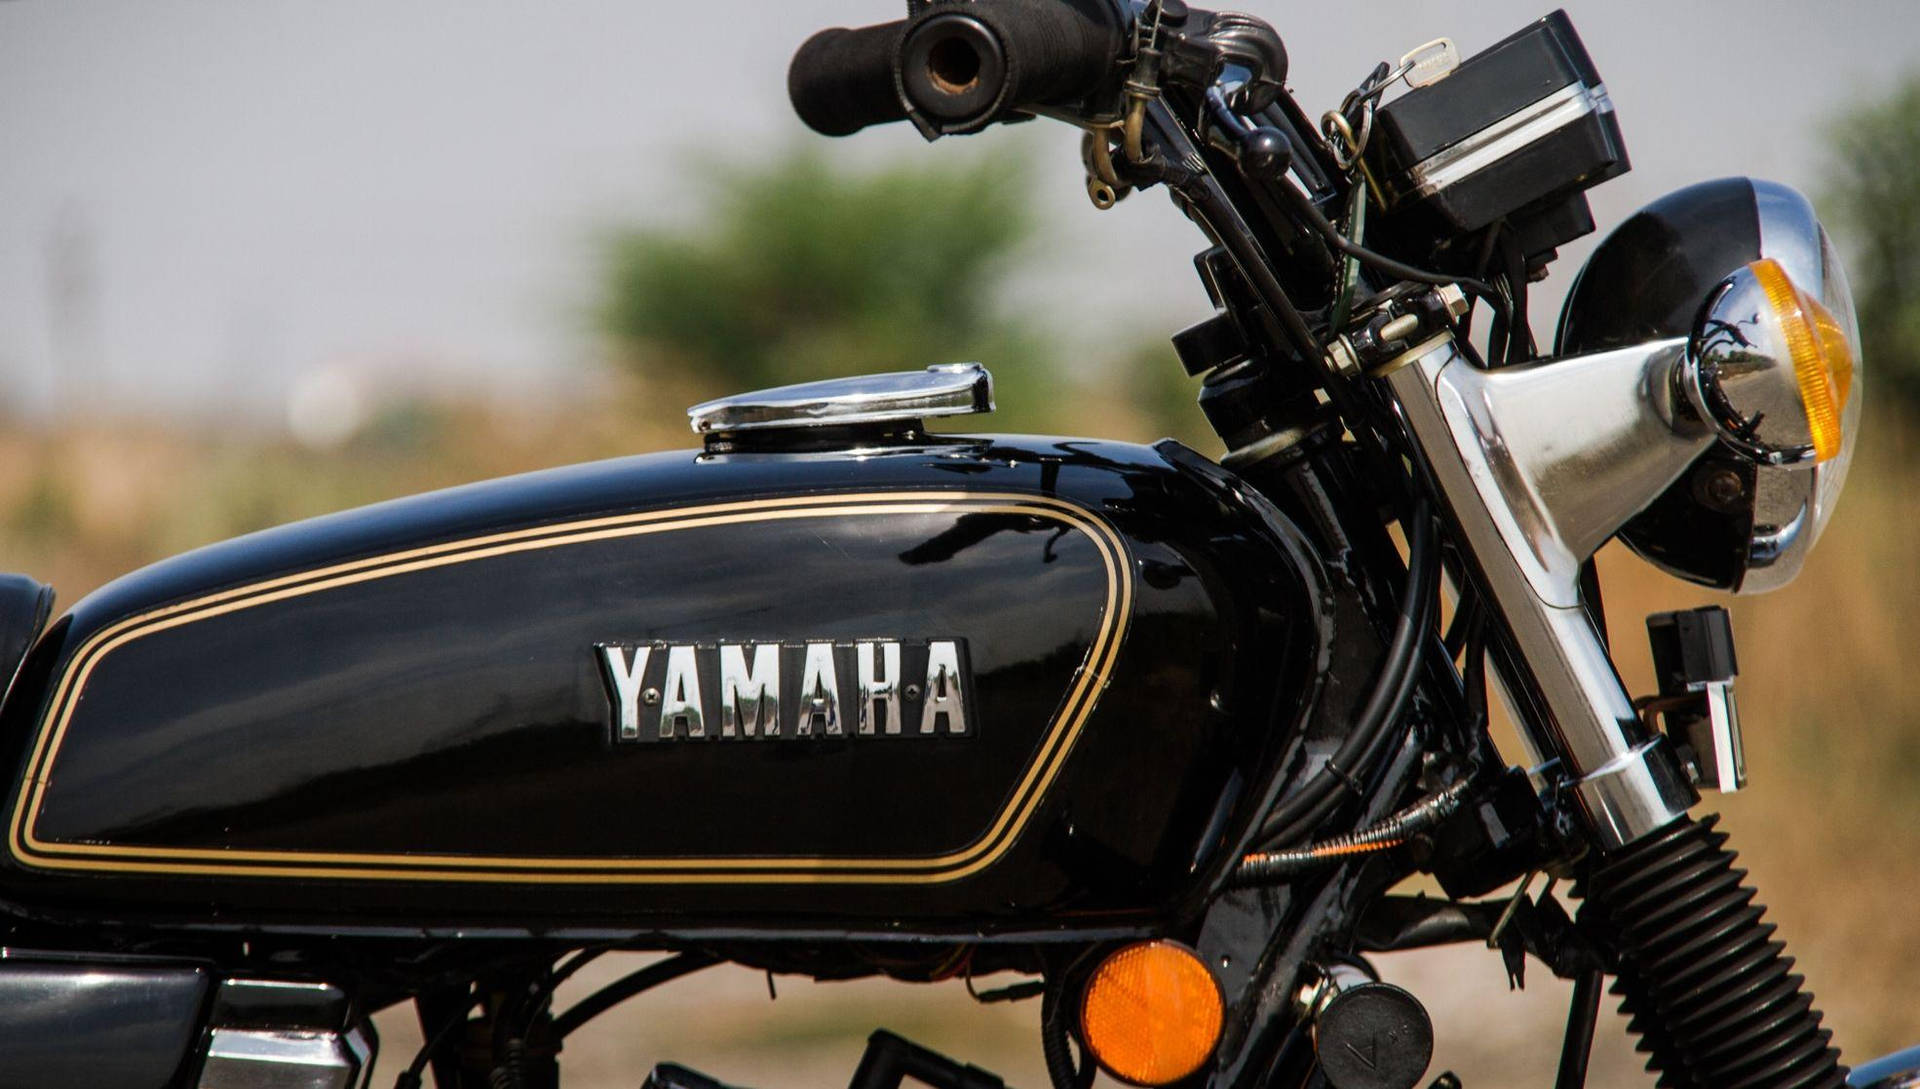 Fotolateral De La Yamaha Rx100 En Color Negro. Fondo de pantalla